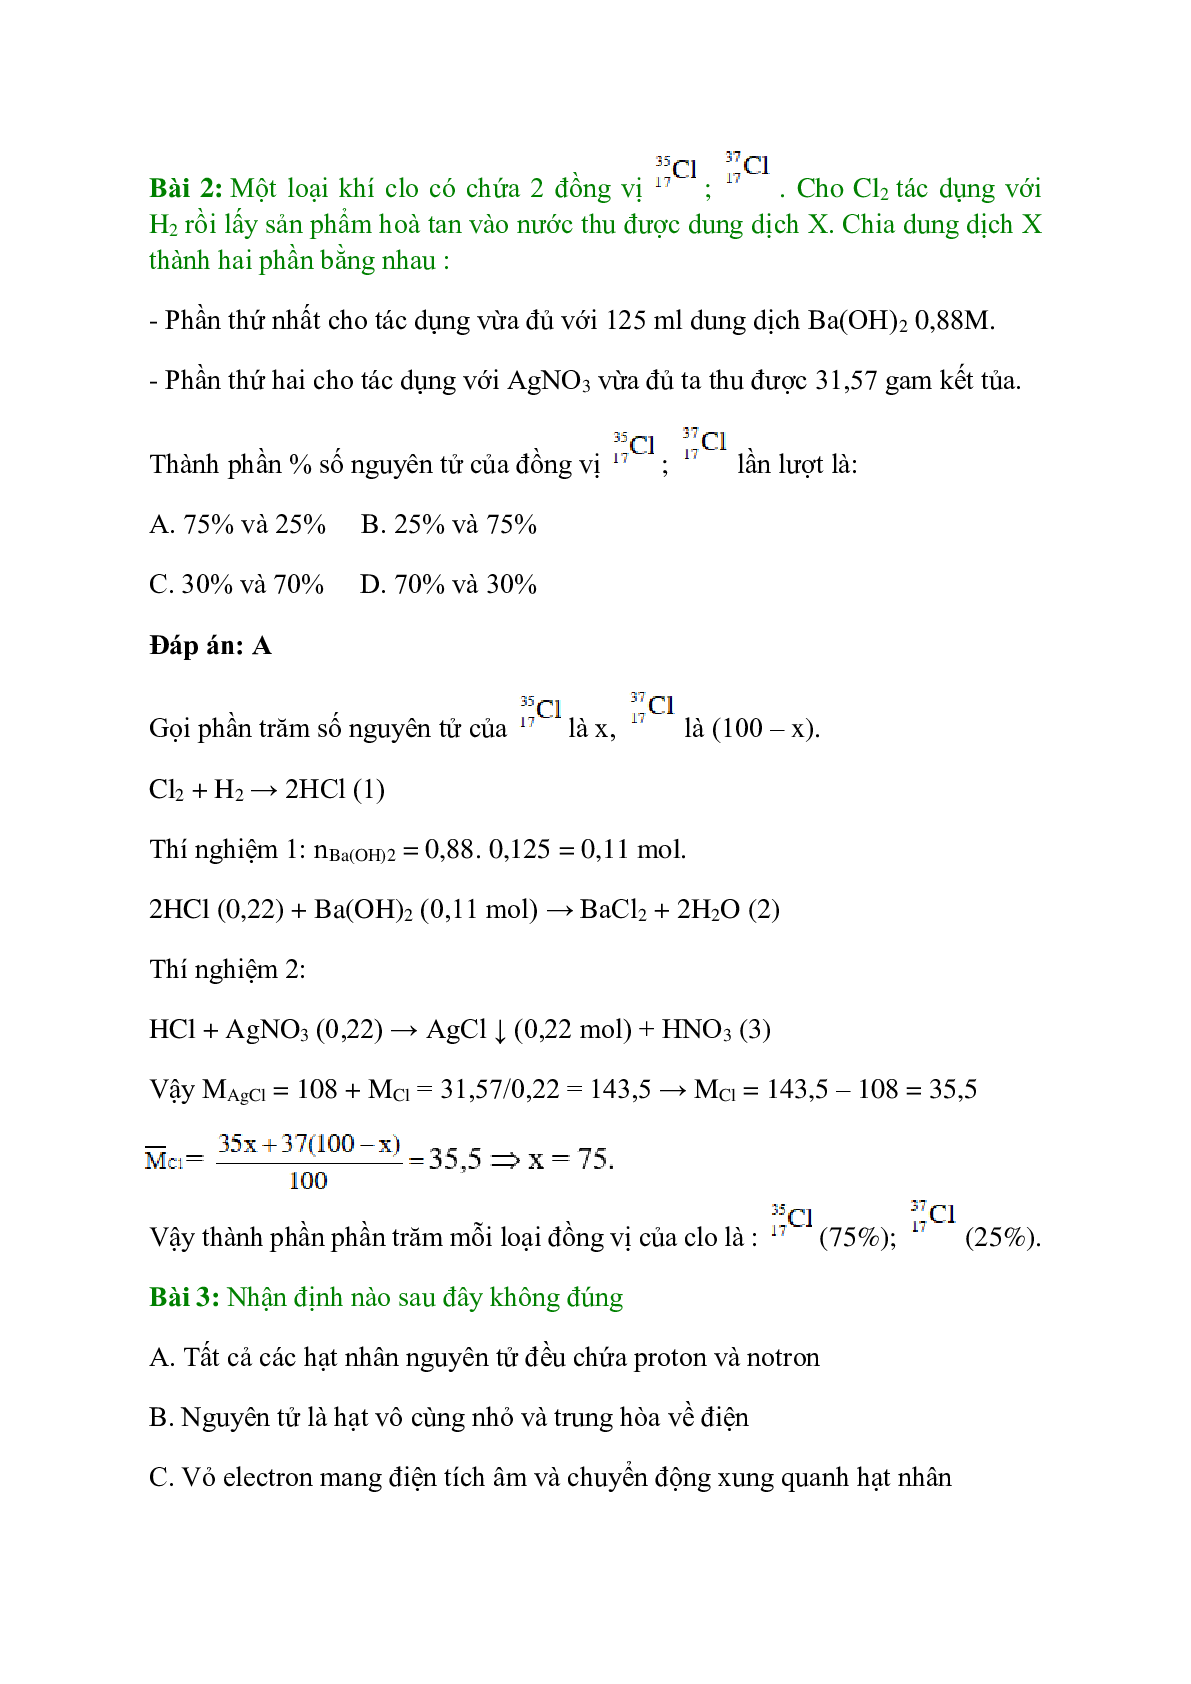 Trắc nghiệm Luyện tập: Thành phần nguyên tử có đáp án - Hóa học 10 (trang 2)